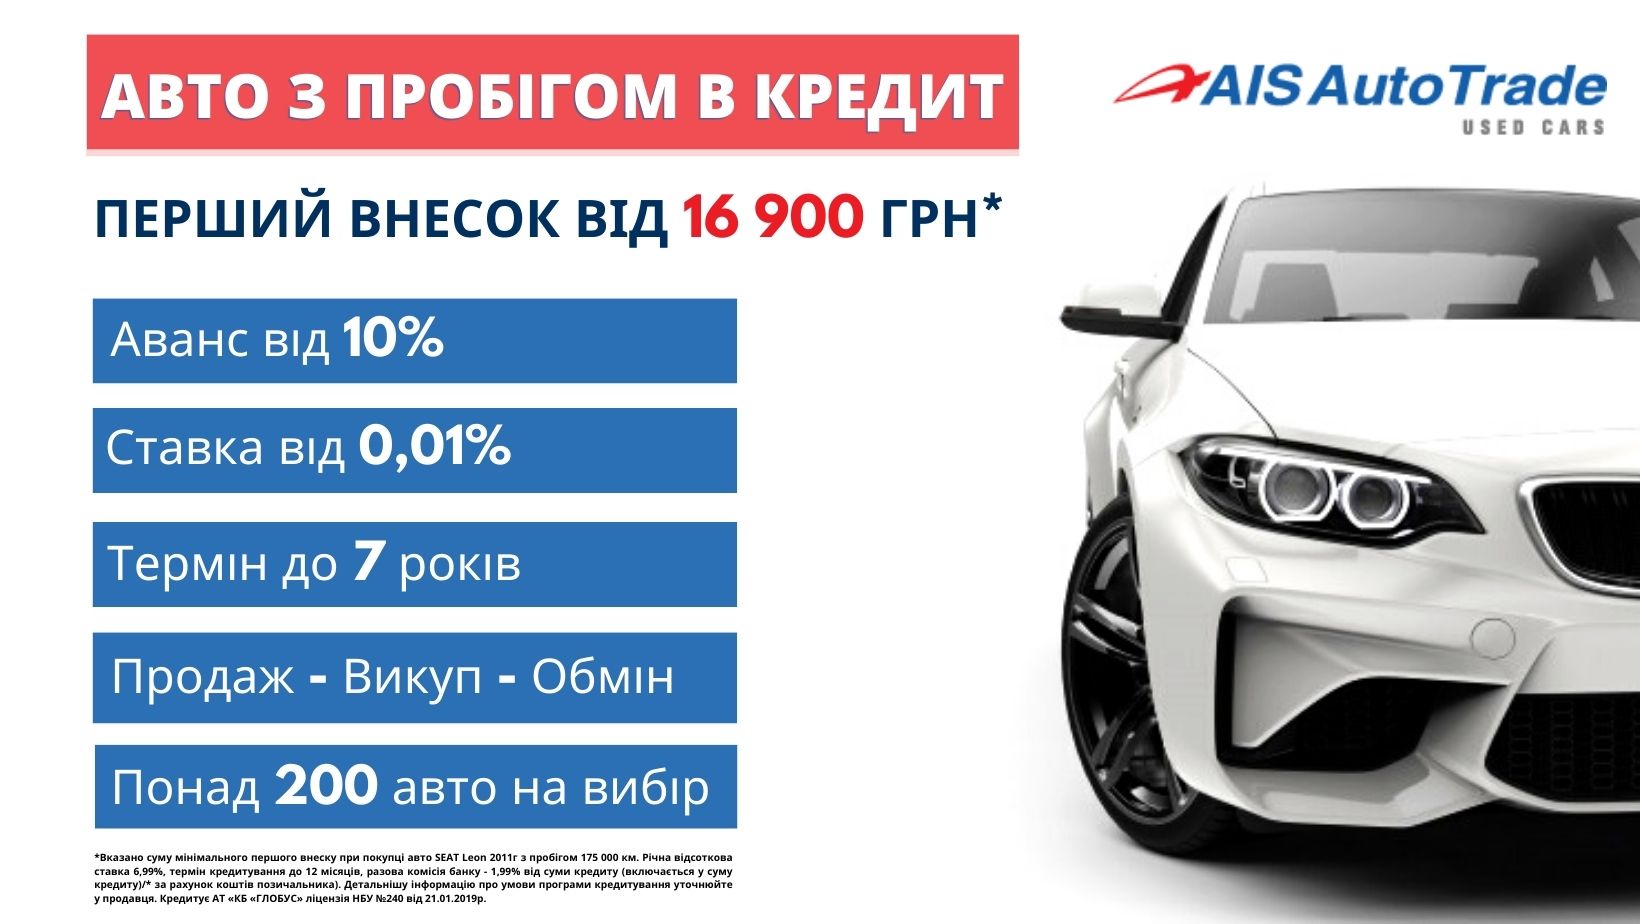 Купити авто з пробігом можна в кредит, маючи всього 16 900 грн!